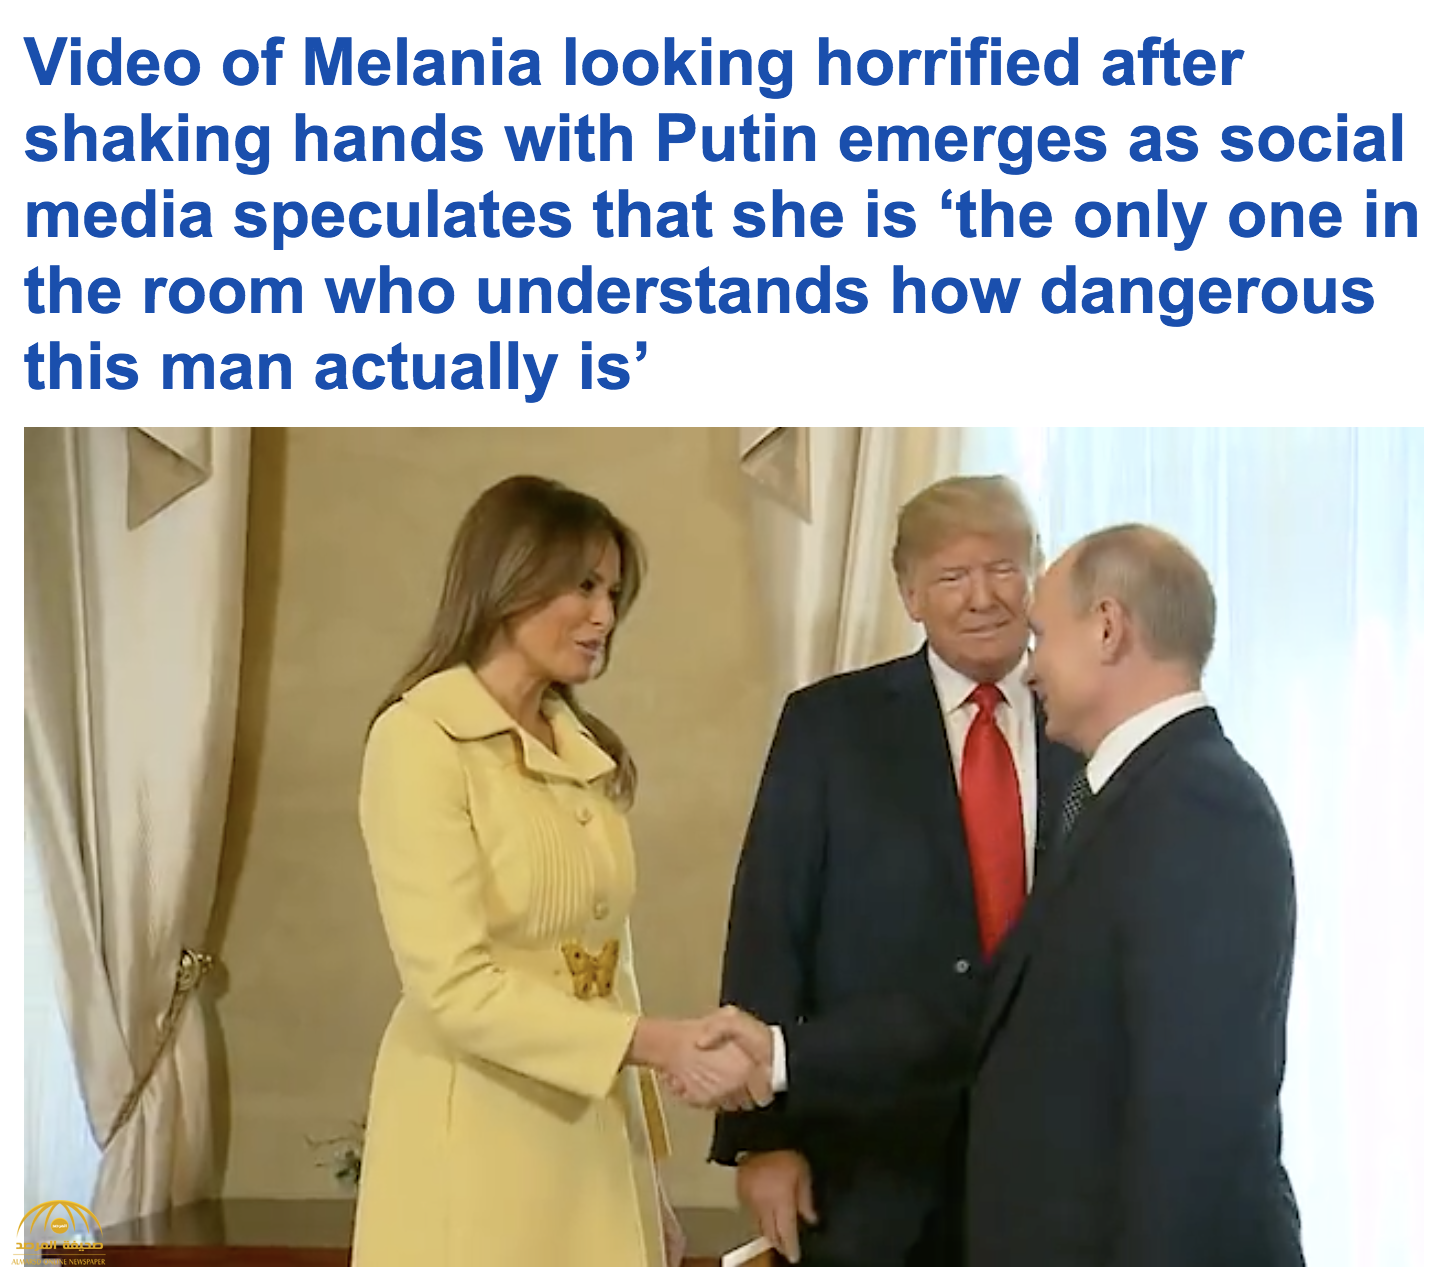 ملامح وجه "ميلانيا" أثناء مصافحة بوتين تثير التساؤلات.. وهكذا فسرها مغردون